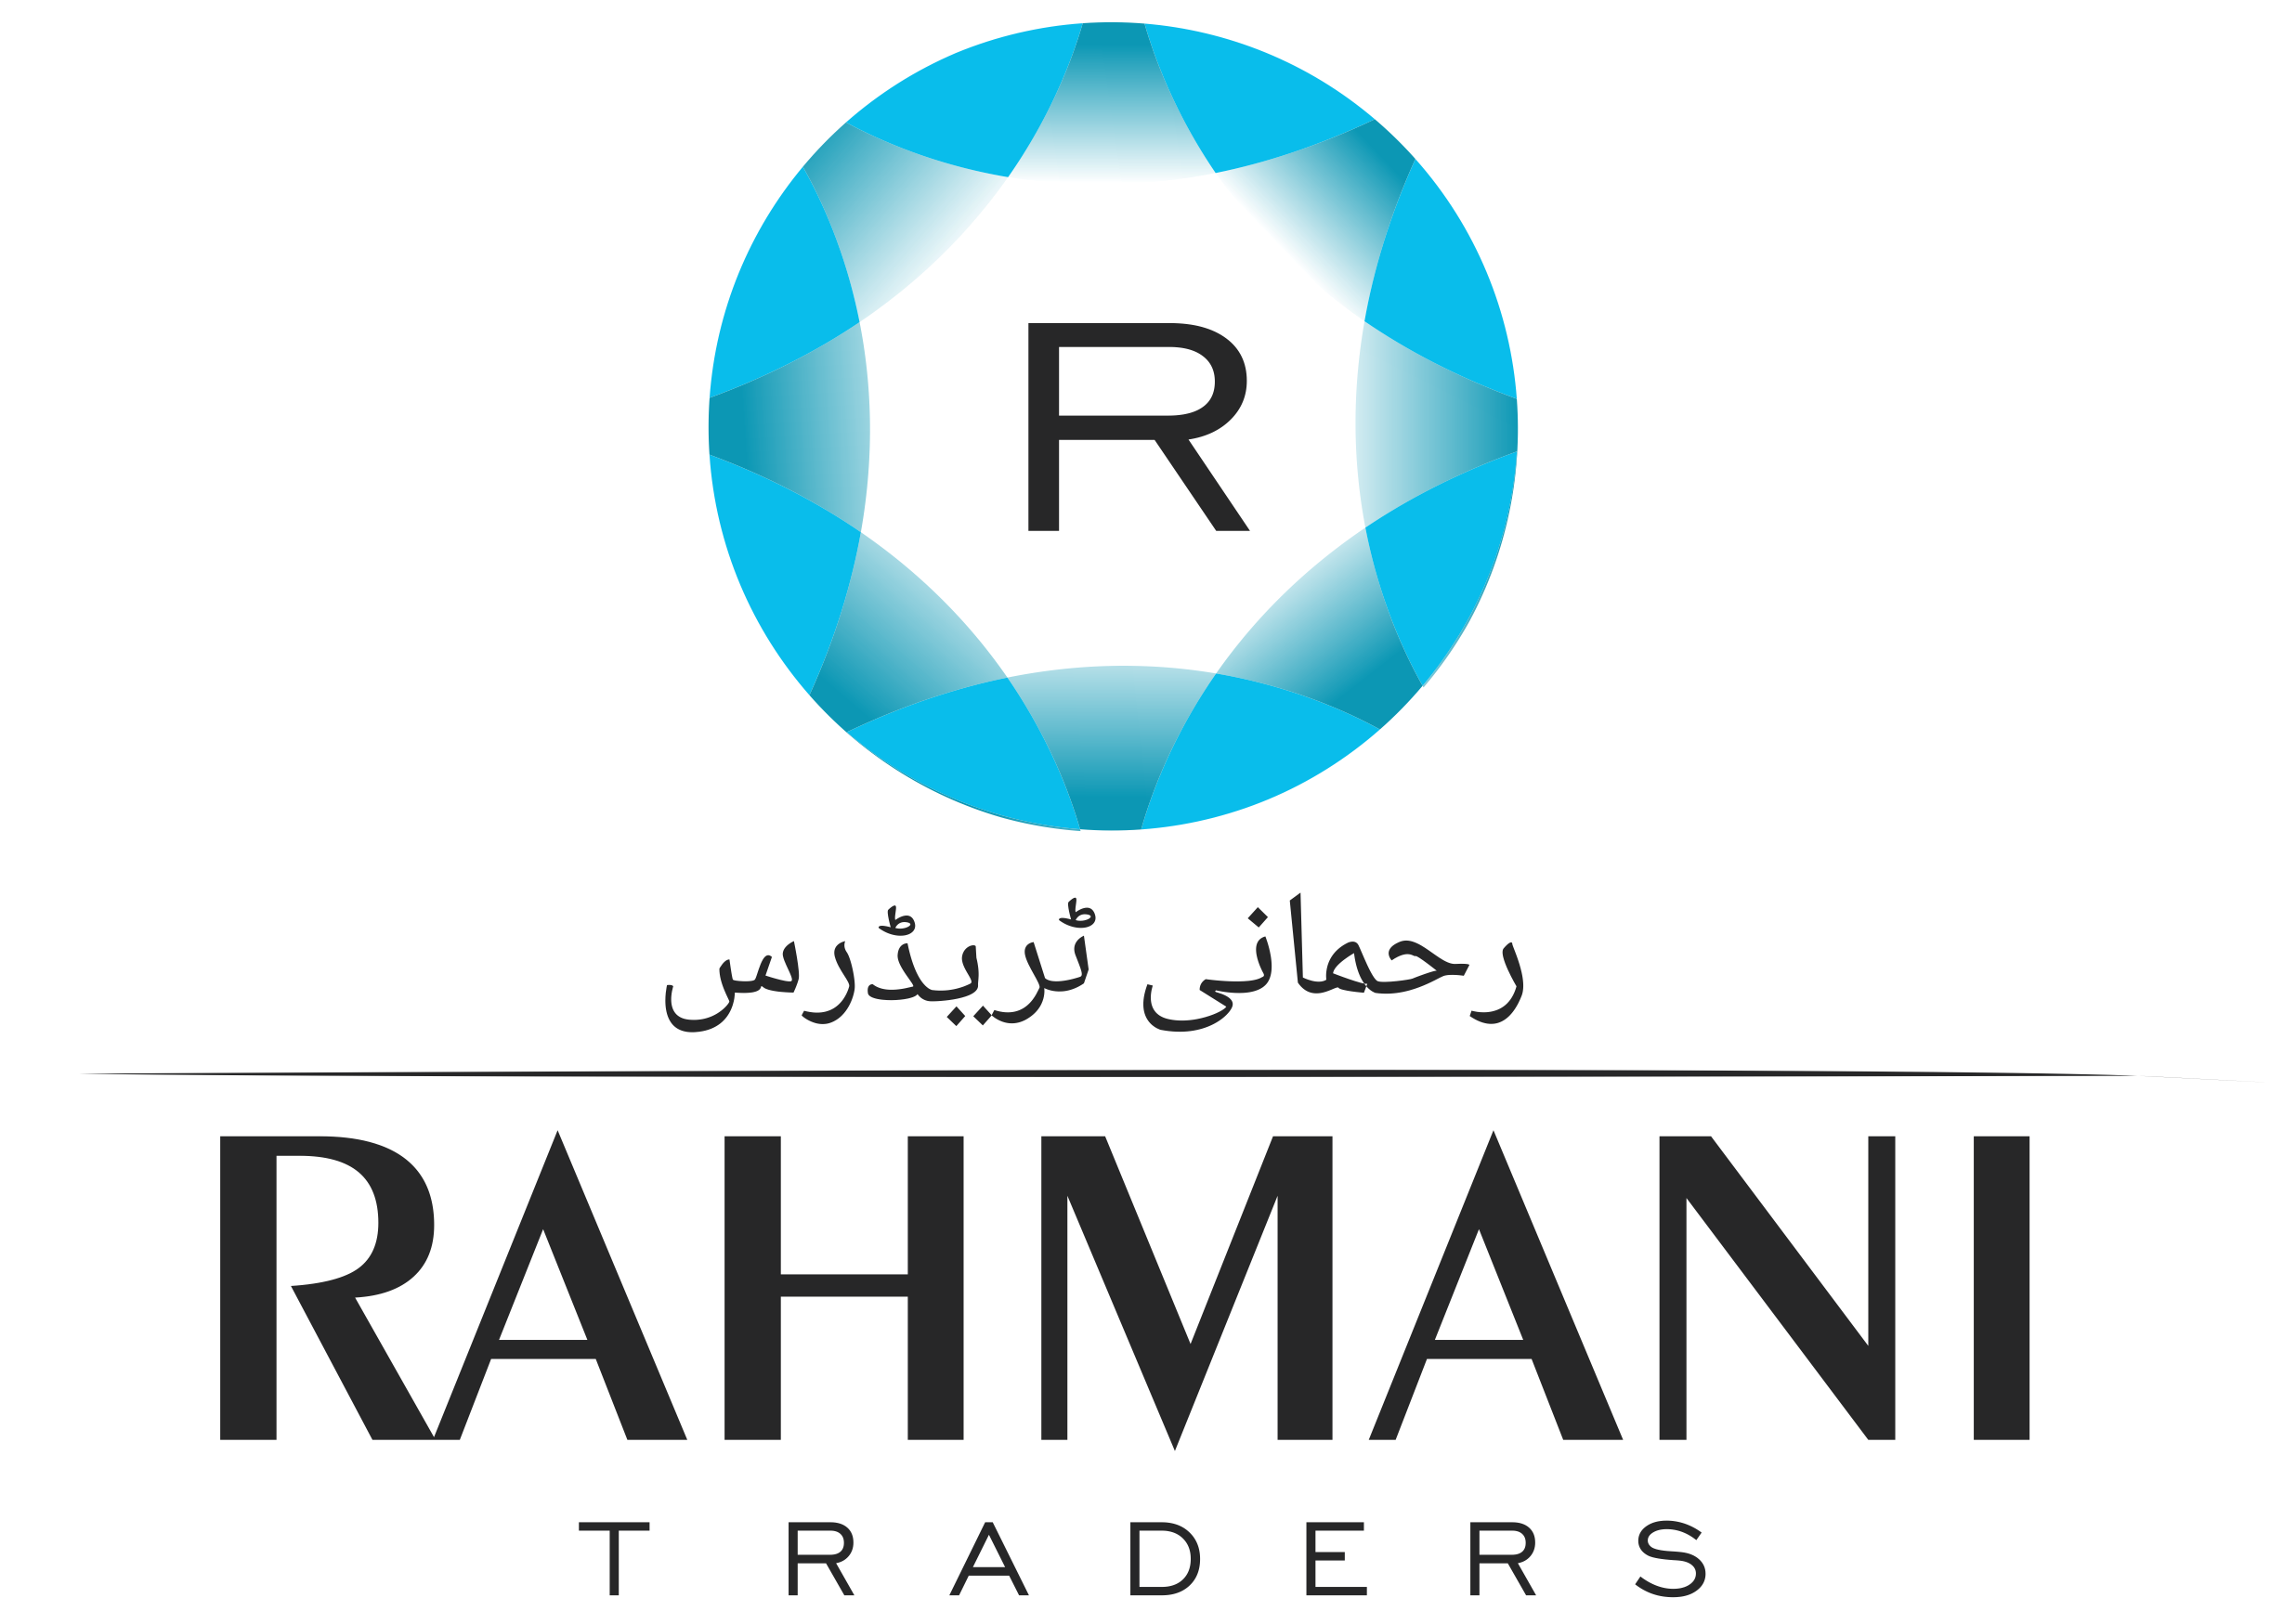 Rahmani Traders